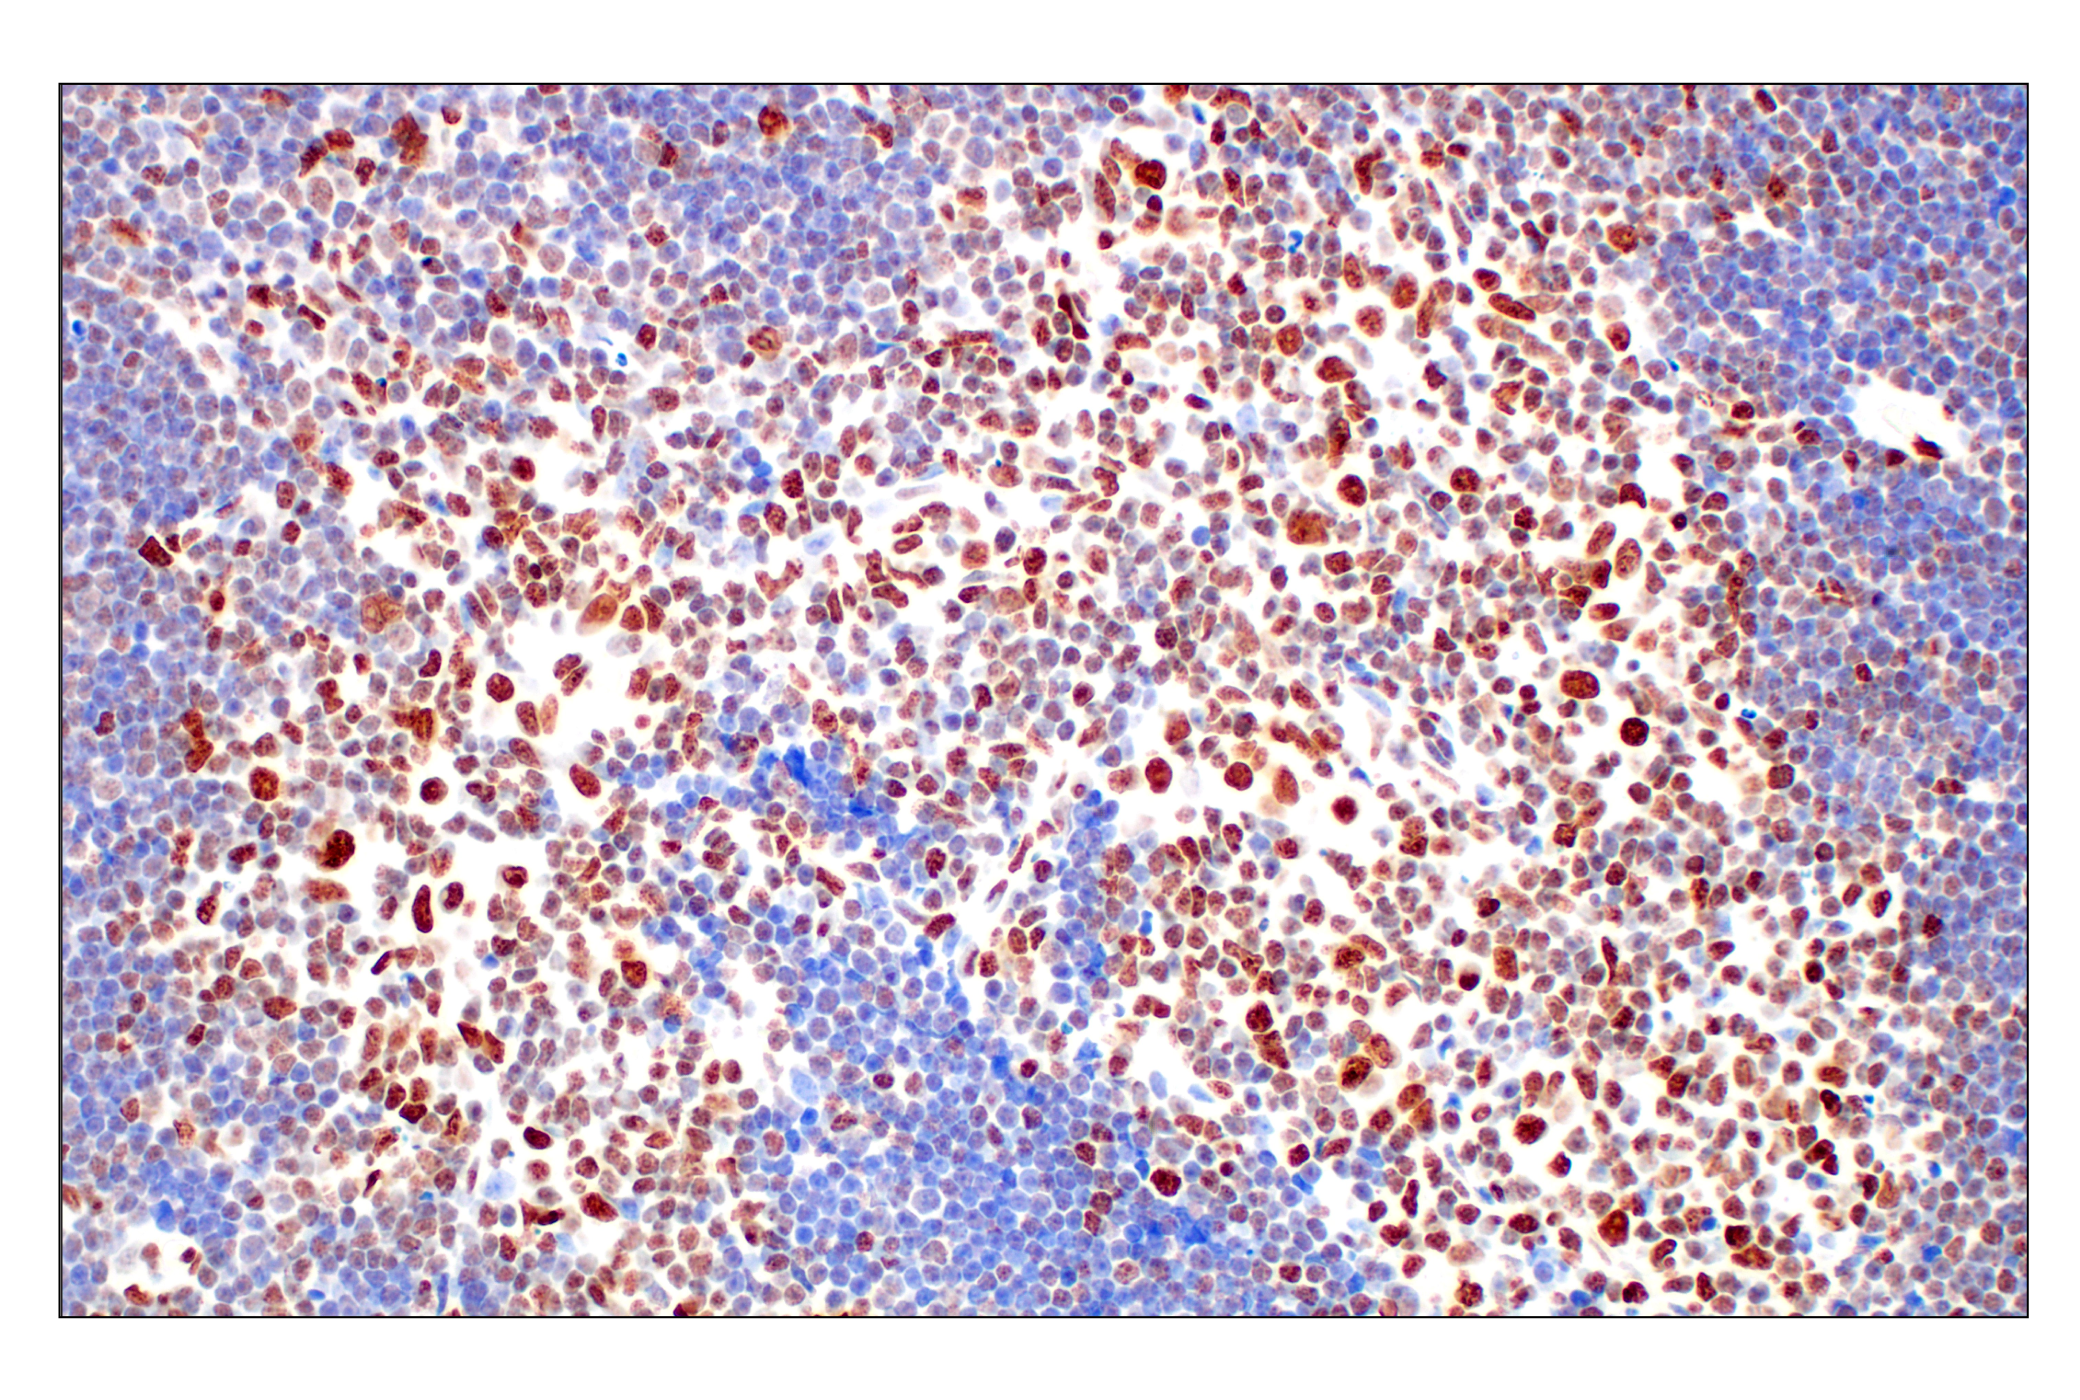  Image 20: Methyl-Histone H3 (Lys27) Antibody Sampler Kit